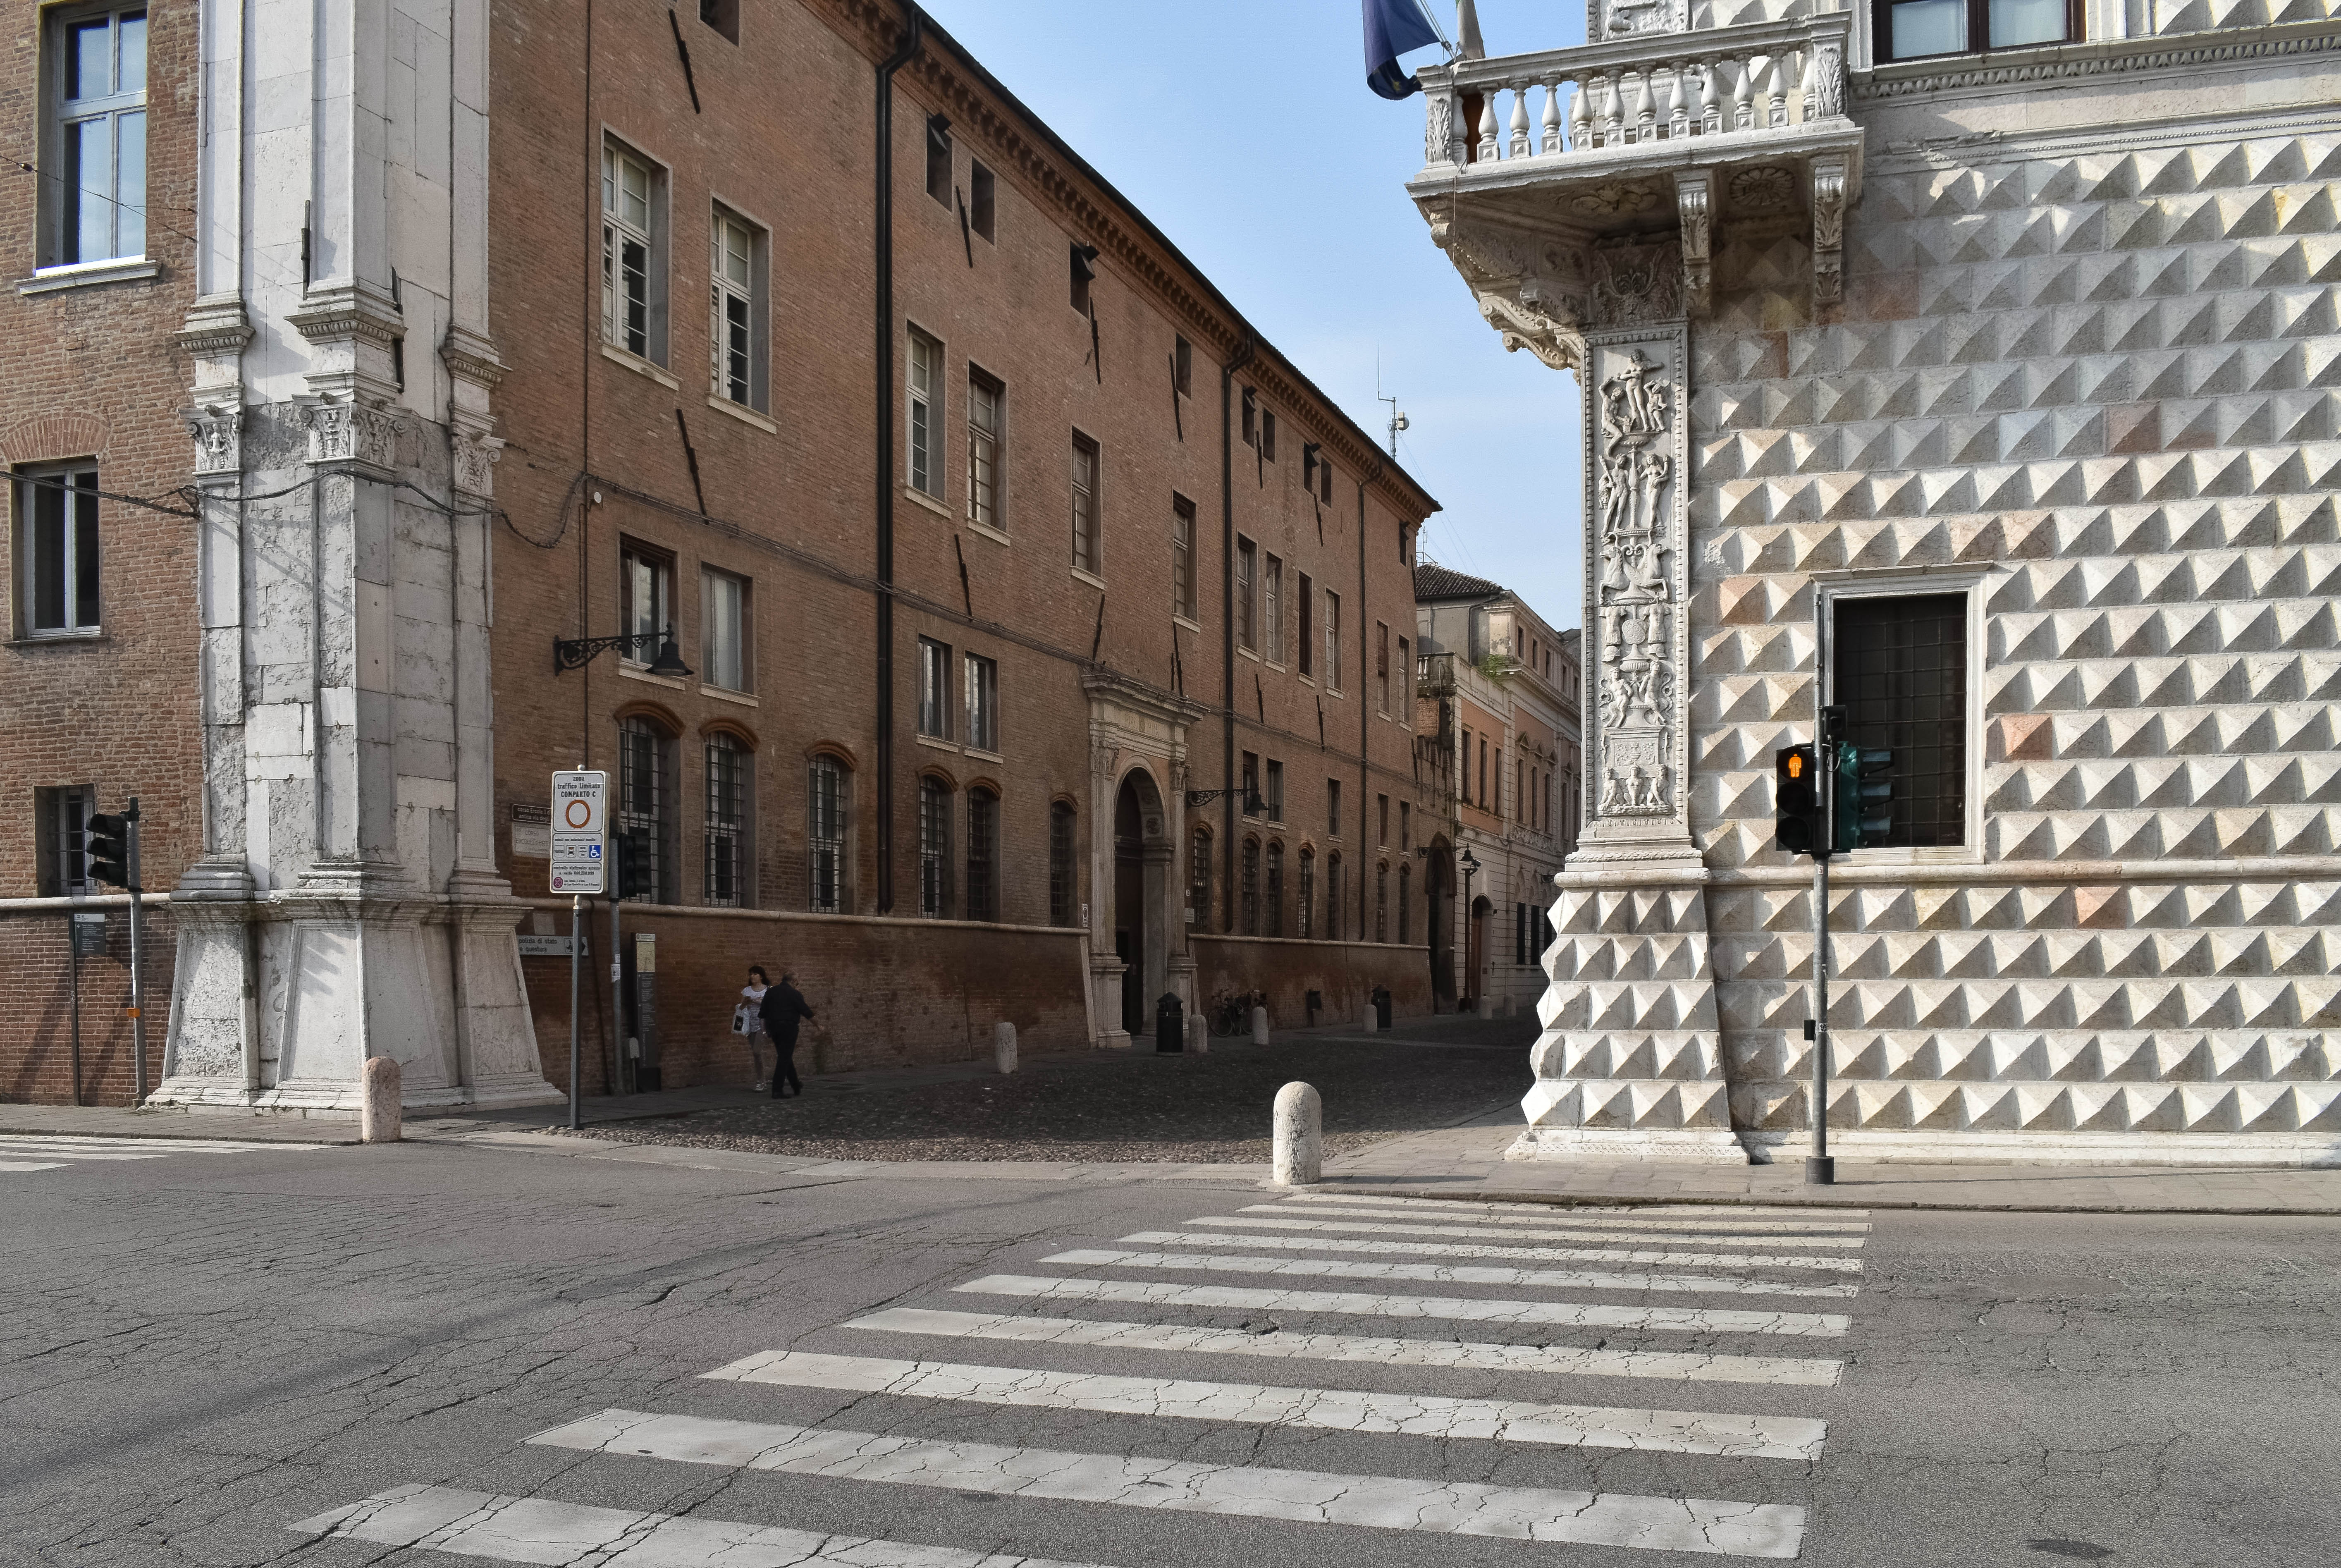 photo: https://upload.wikimedia.org/wikipedia/commons/6/6f/Palazzo_dei_Diamanti_e_Palazzo_Turchi_di_Bagno_%28Ferrara%29.jpg